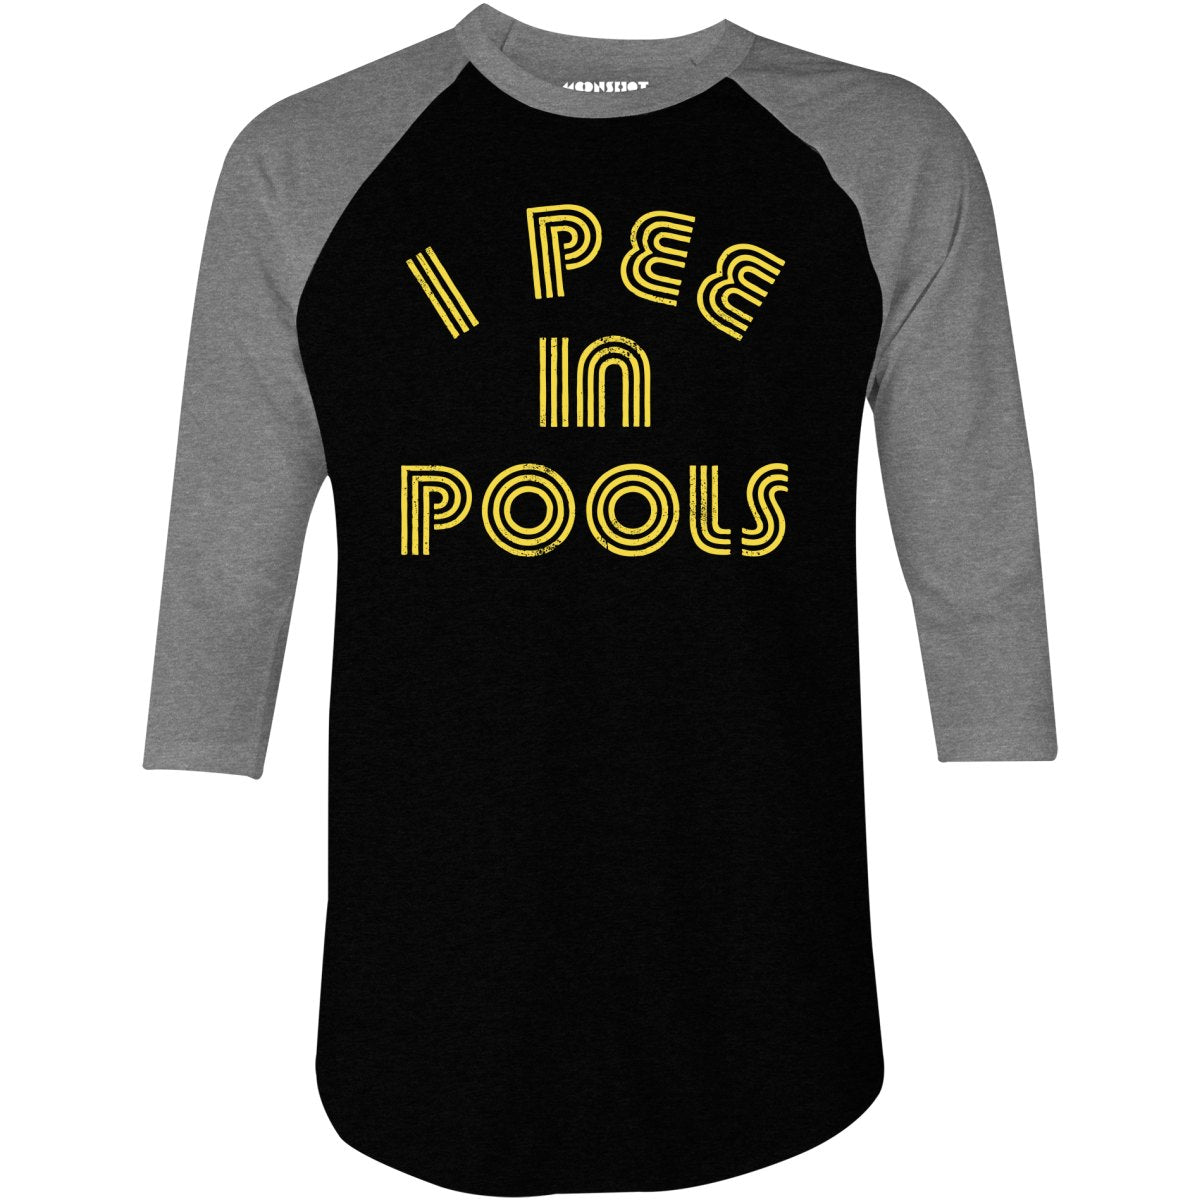 I Pee in Pools - 3/4 Sleeve Raglan T-Shirt